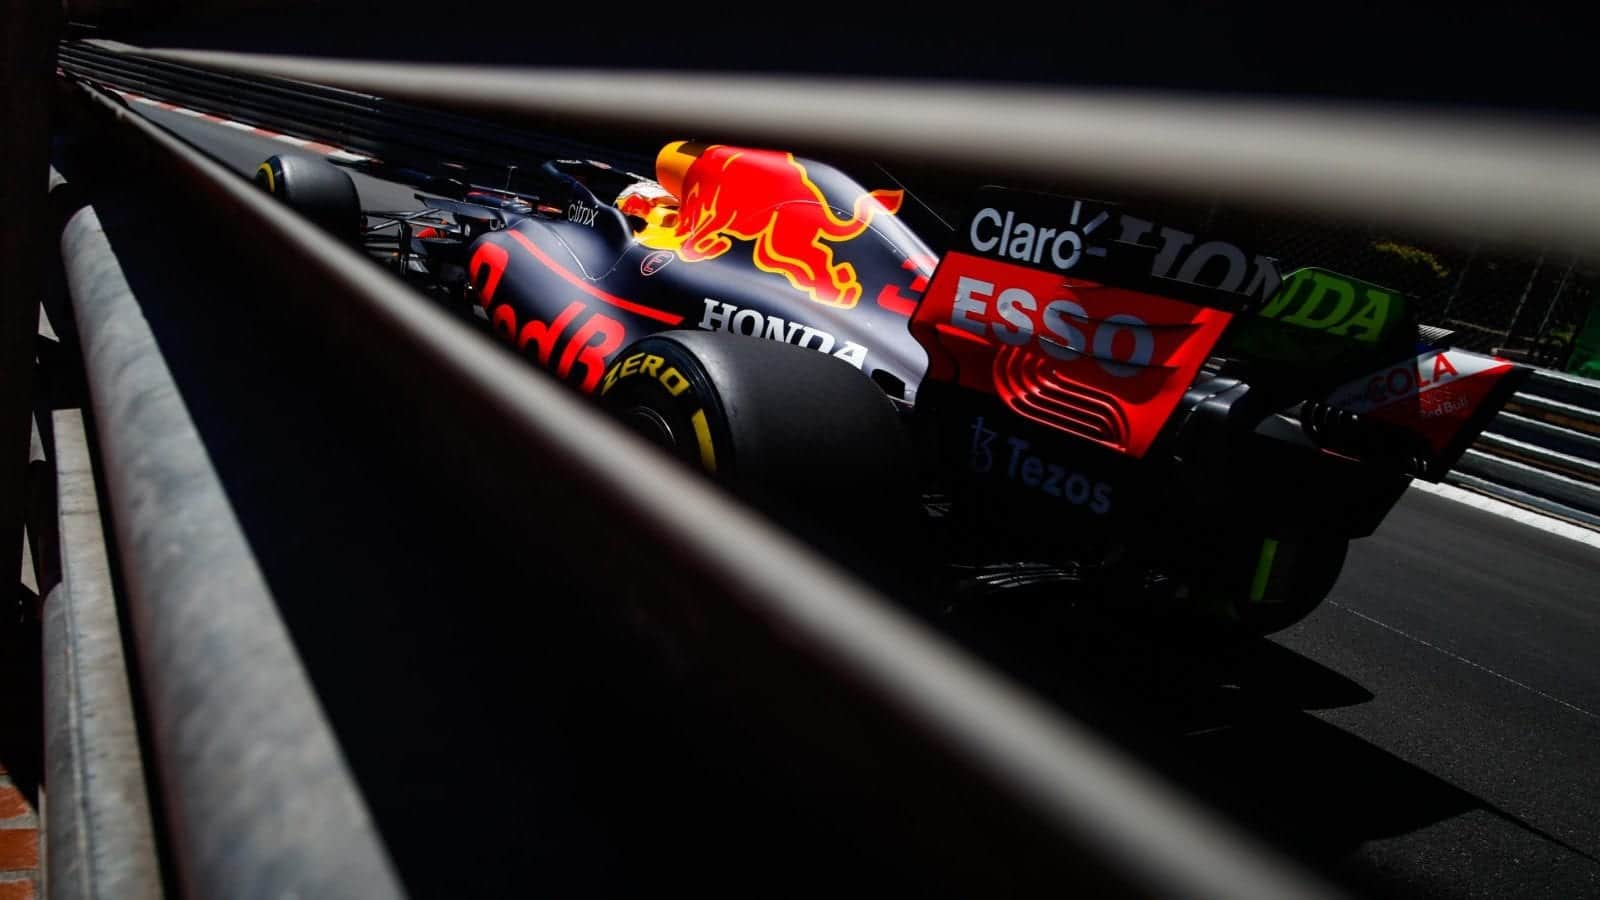 Max-Verstappen-at-Monaco-in-practice-for-the-2021-Grand-Prix